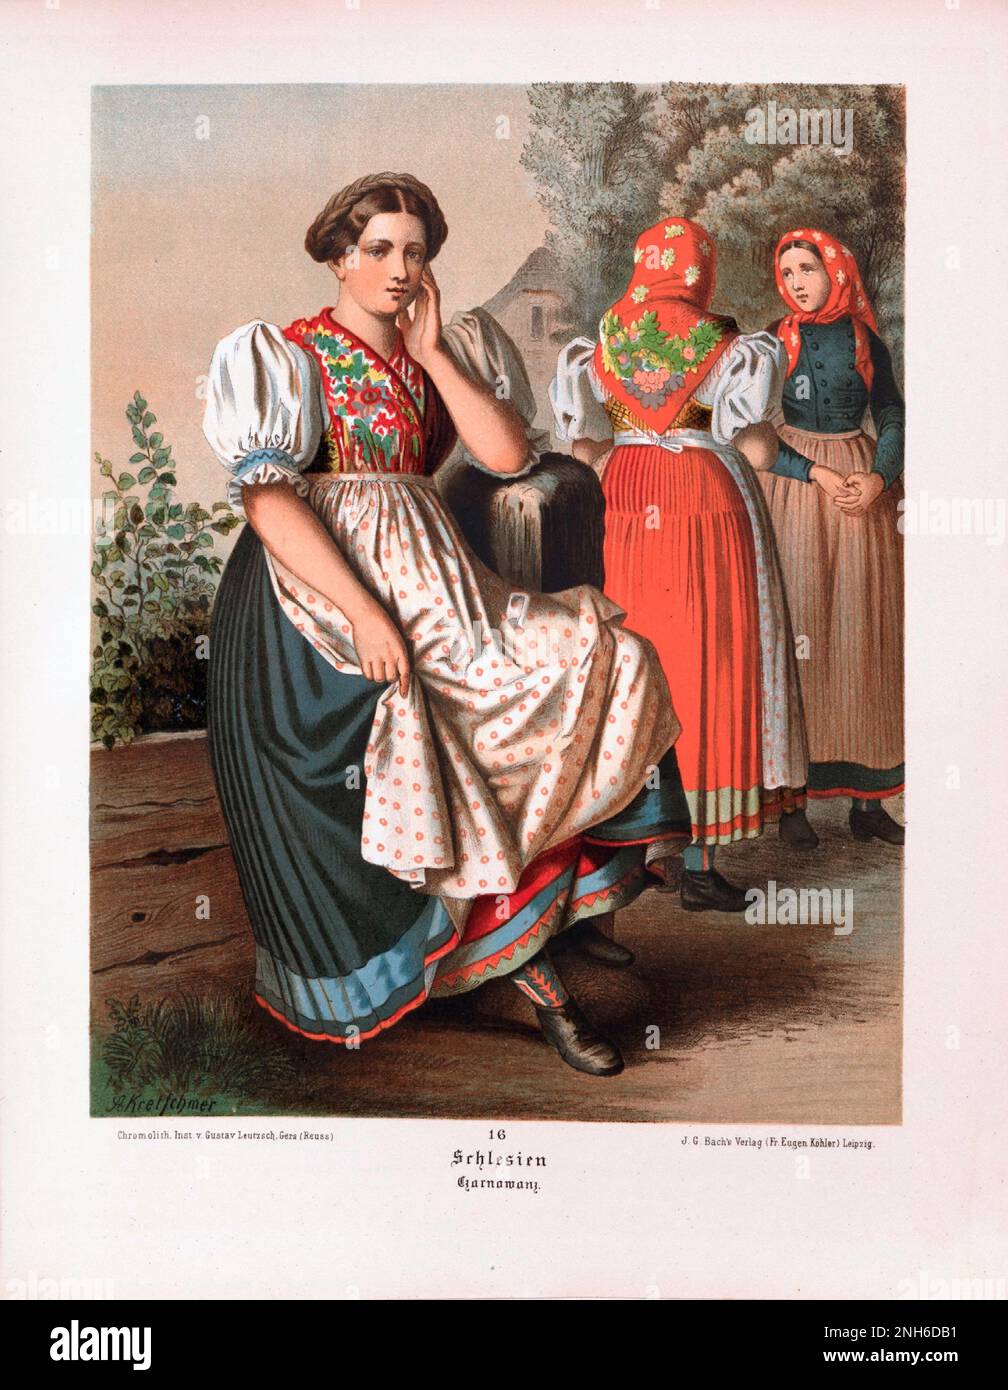 Disfraz folclórico alemán. Schlesien. litografía del siglo 19th. Foto de stock